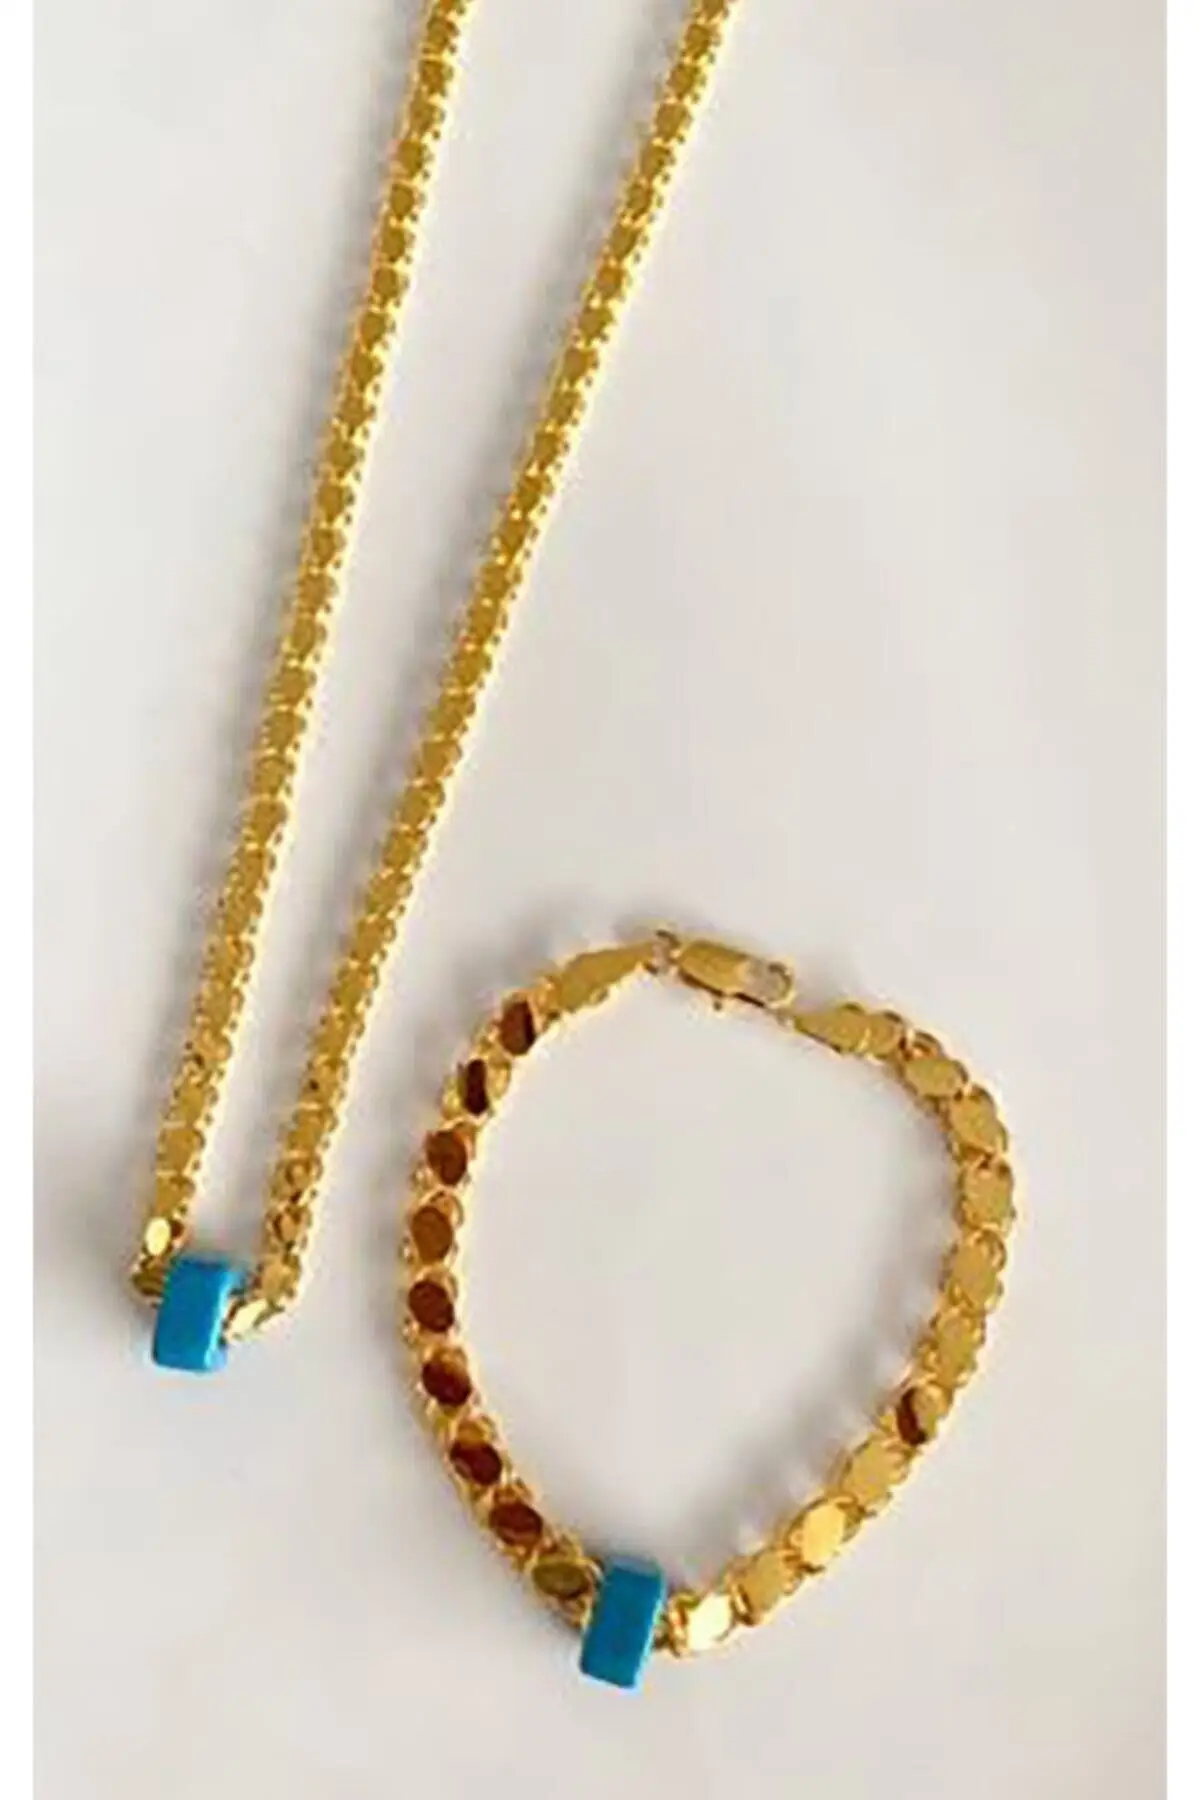 

Женская модная бижутерия, позолоченная цепочка из Алеппо, ожерелье и браслет, ювелирные изделия, длина 60 см